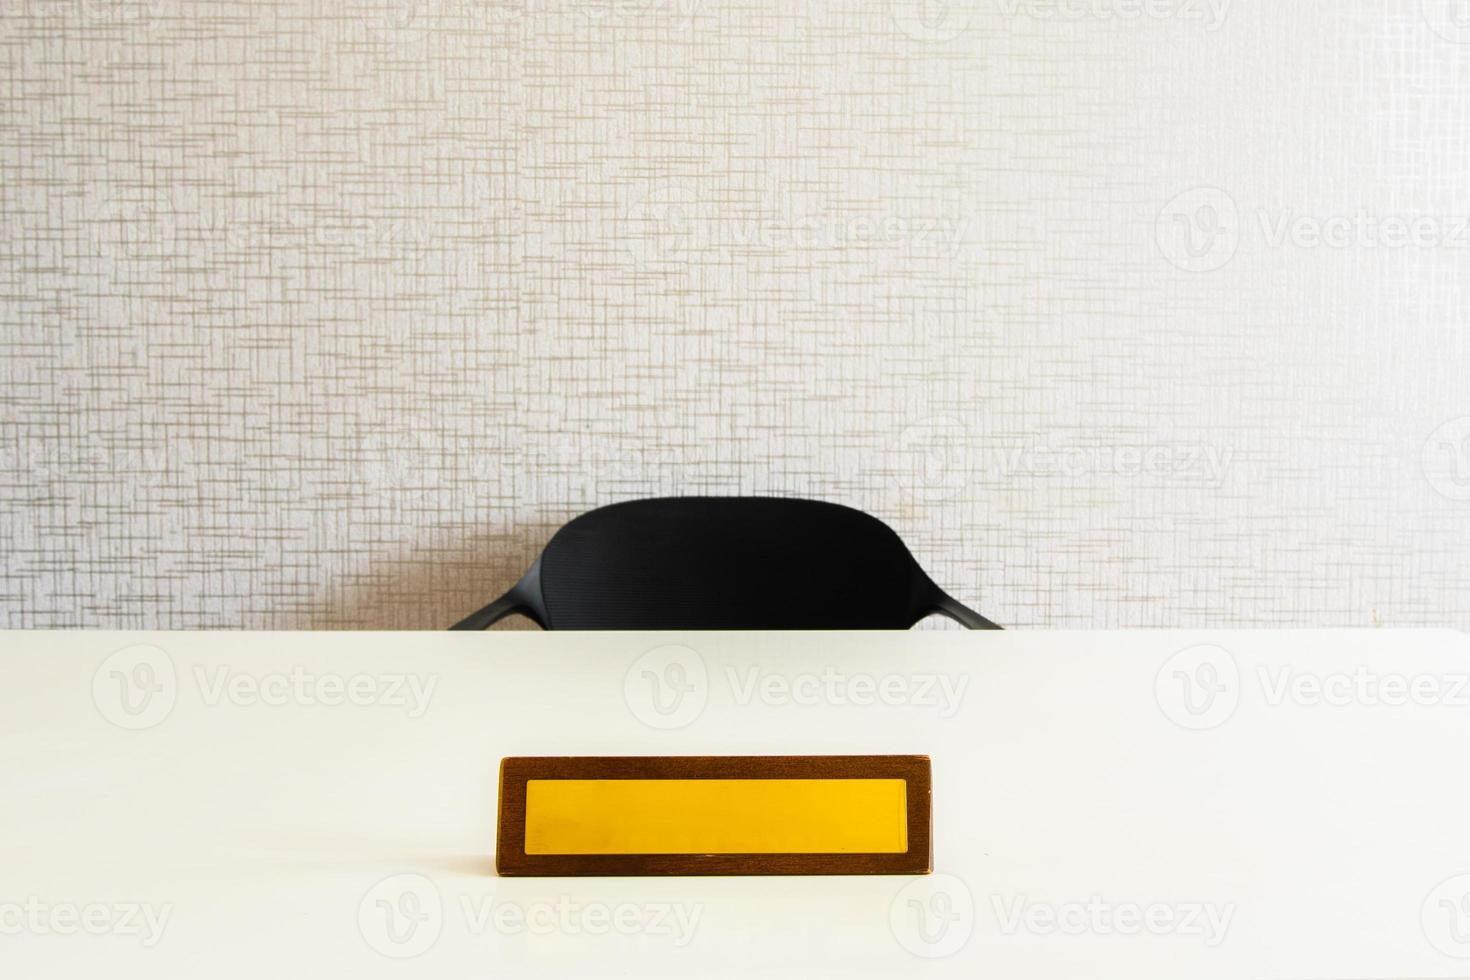 espaço de nome vazio na placa de escritório amarela na mesa branca com cadeira. maquete realista vetorial de mesa branca de escritório de madeira com placa de escritório em branco, identificação ou placa de identificação isolada foto